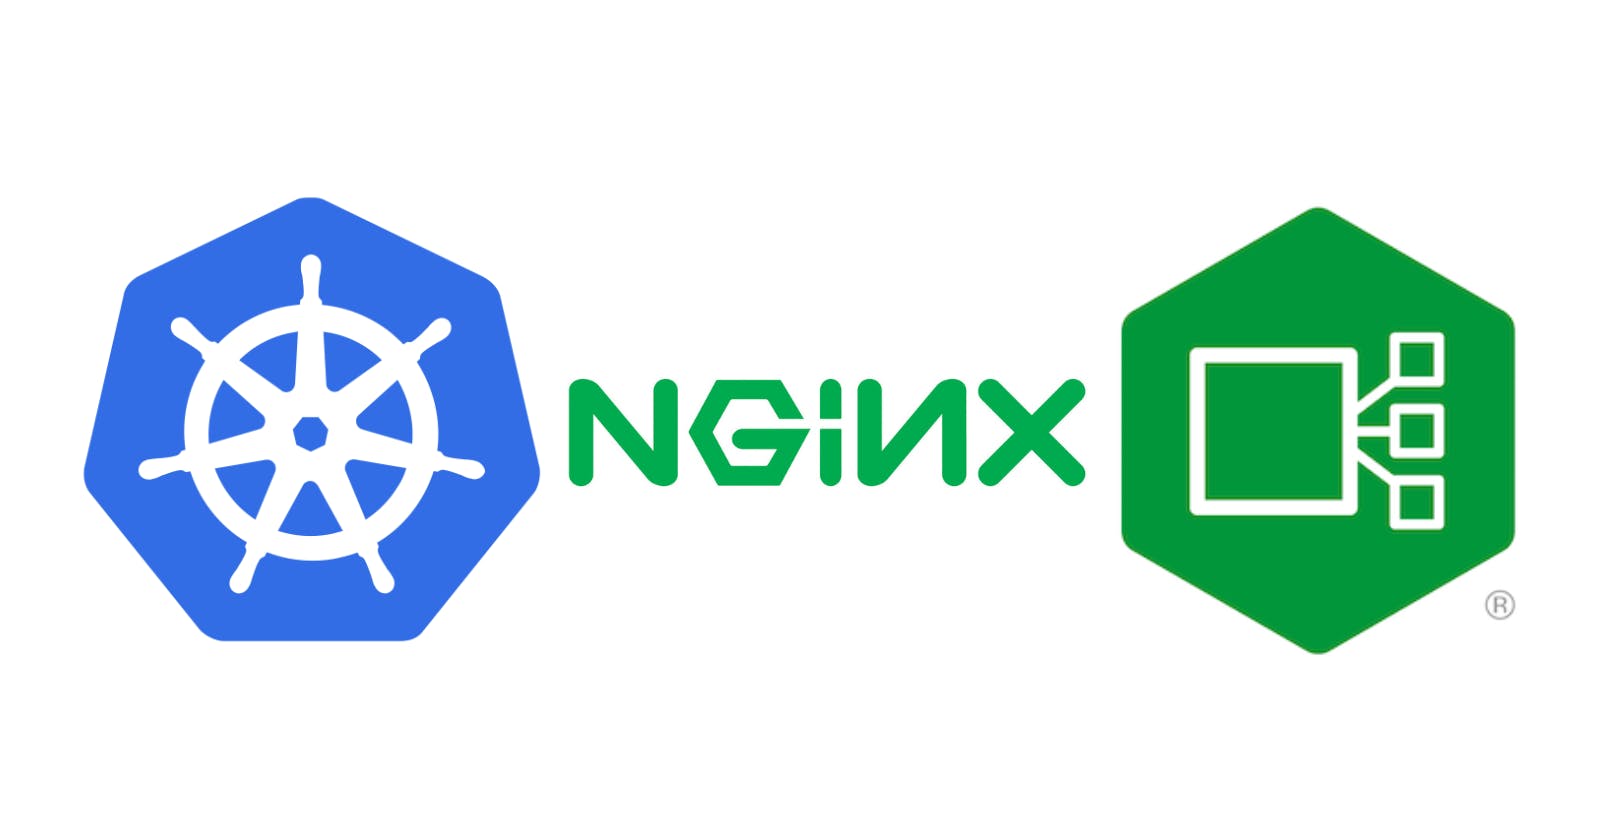 Testing the NGINX Ingress Controller locally (Docker Desktop)